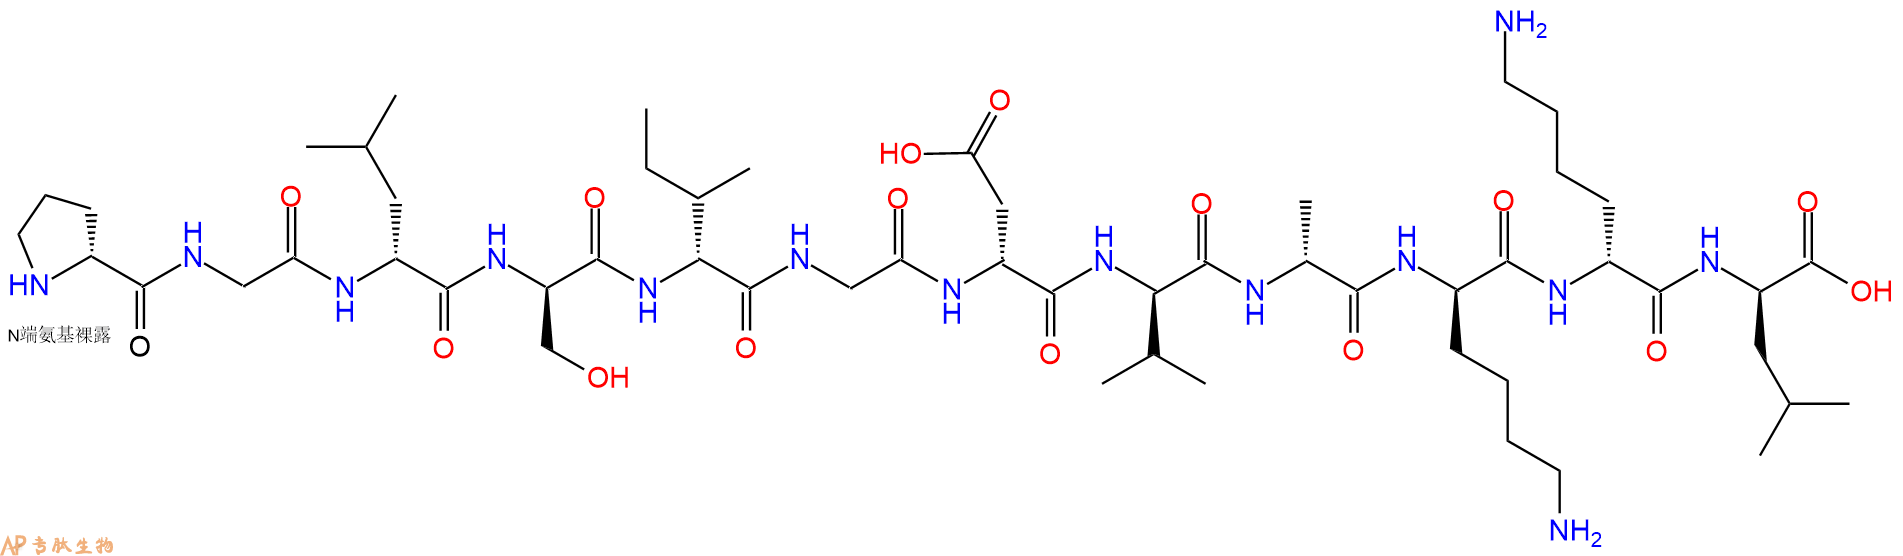 专肽生物产品H2N-DPro-Gly-DLeu-DSer-DIle-Gly-DAsp-DVal-DAla-DLy